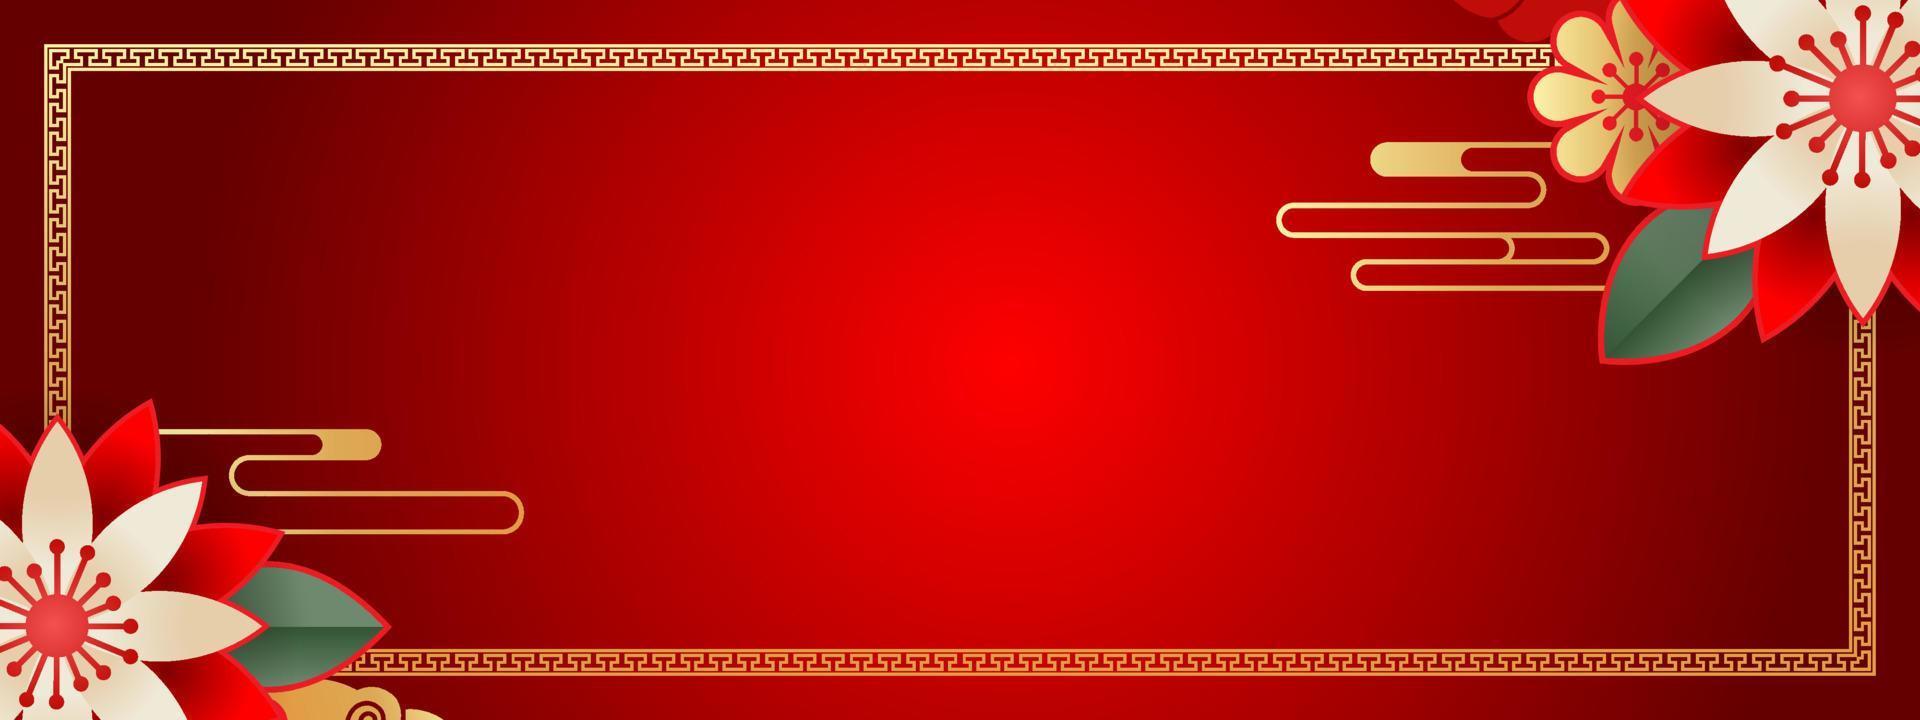 chinesischer hintergrundvektor, orientalisches fahnendesign mit goldroter farbe mit leerem raum, traditionelle kunstschablone des chinesischen neujahrs vektor